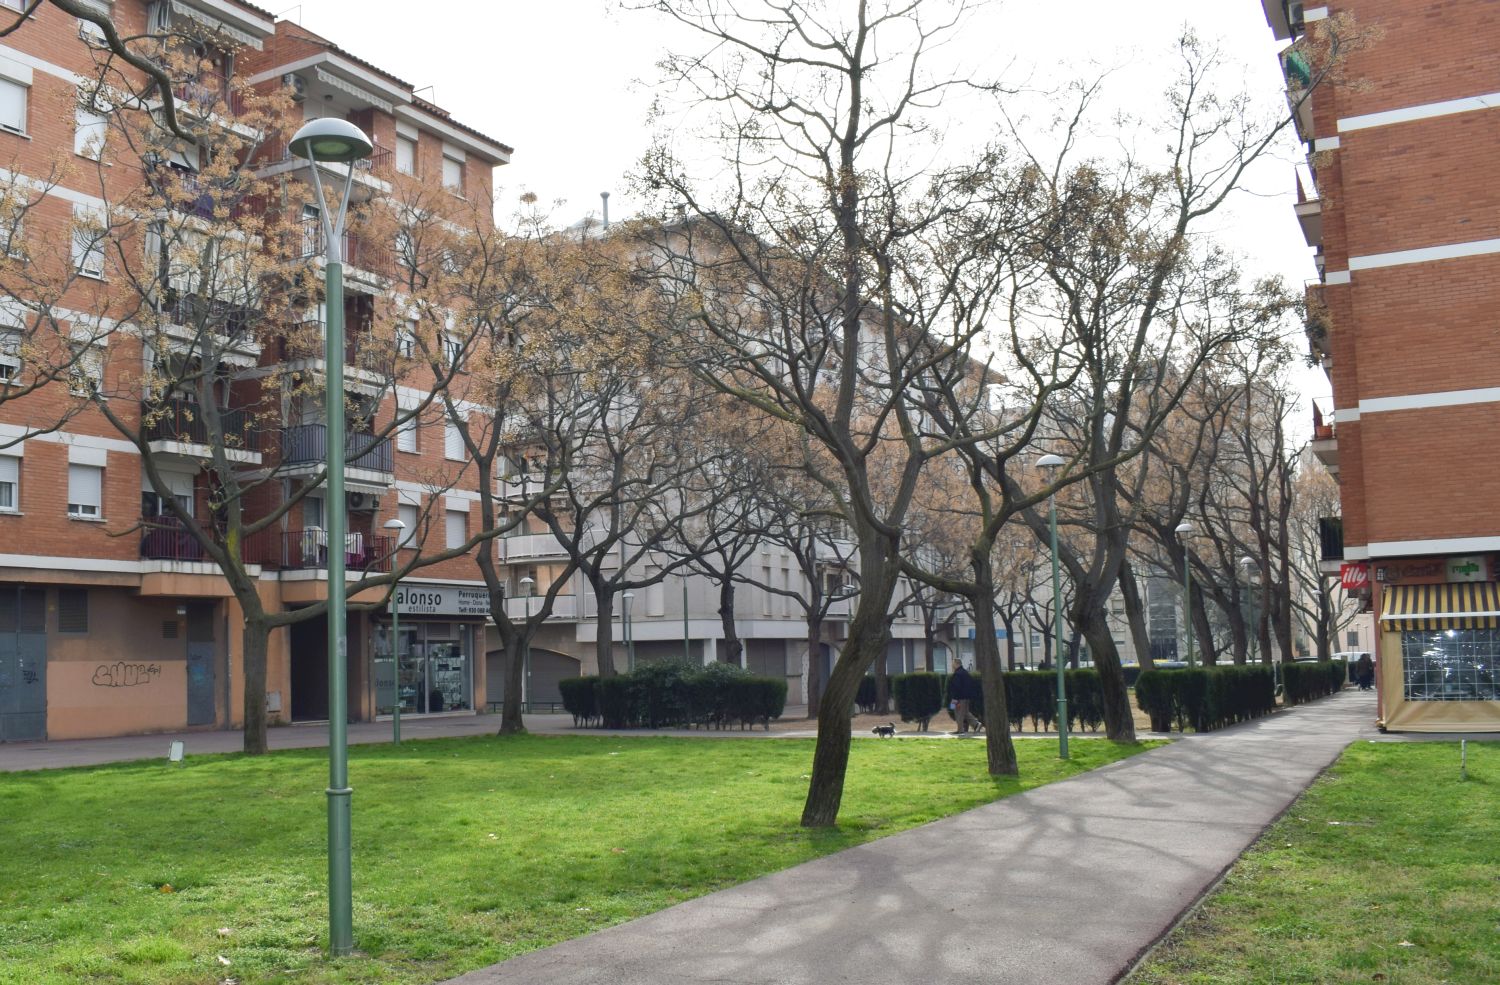 Una de les zones a on s'han substituït els fanals és als passatges dels jardins de l'avinguda Espanya amb avinguda Roma 